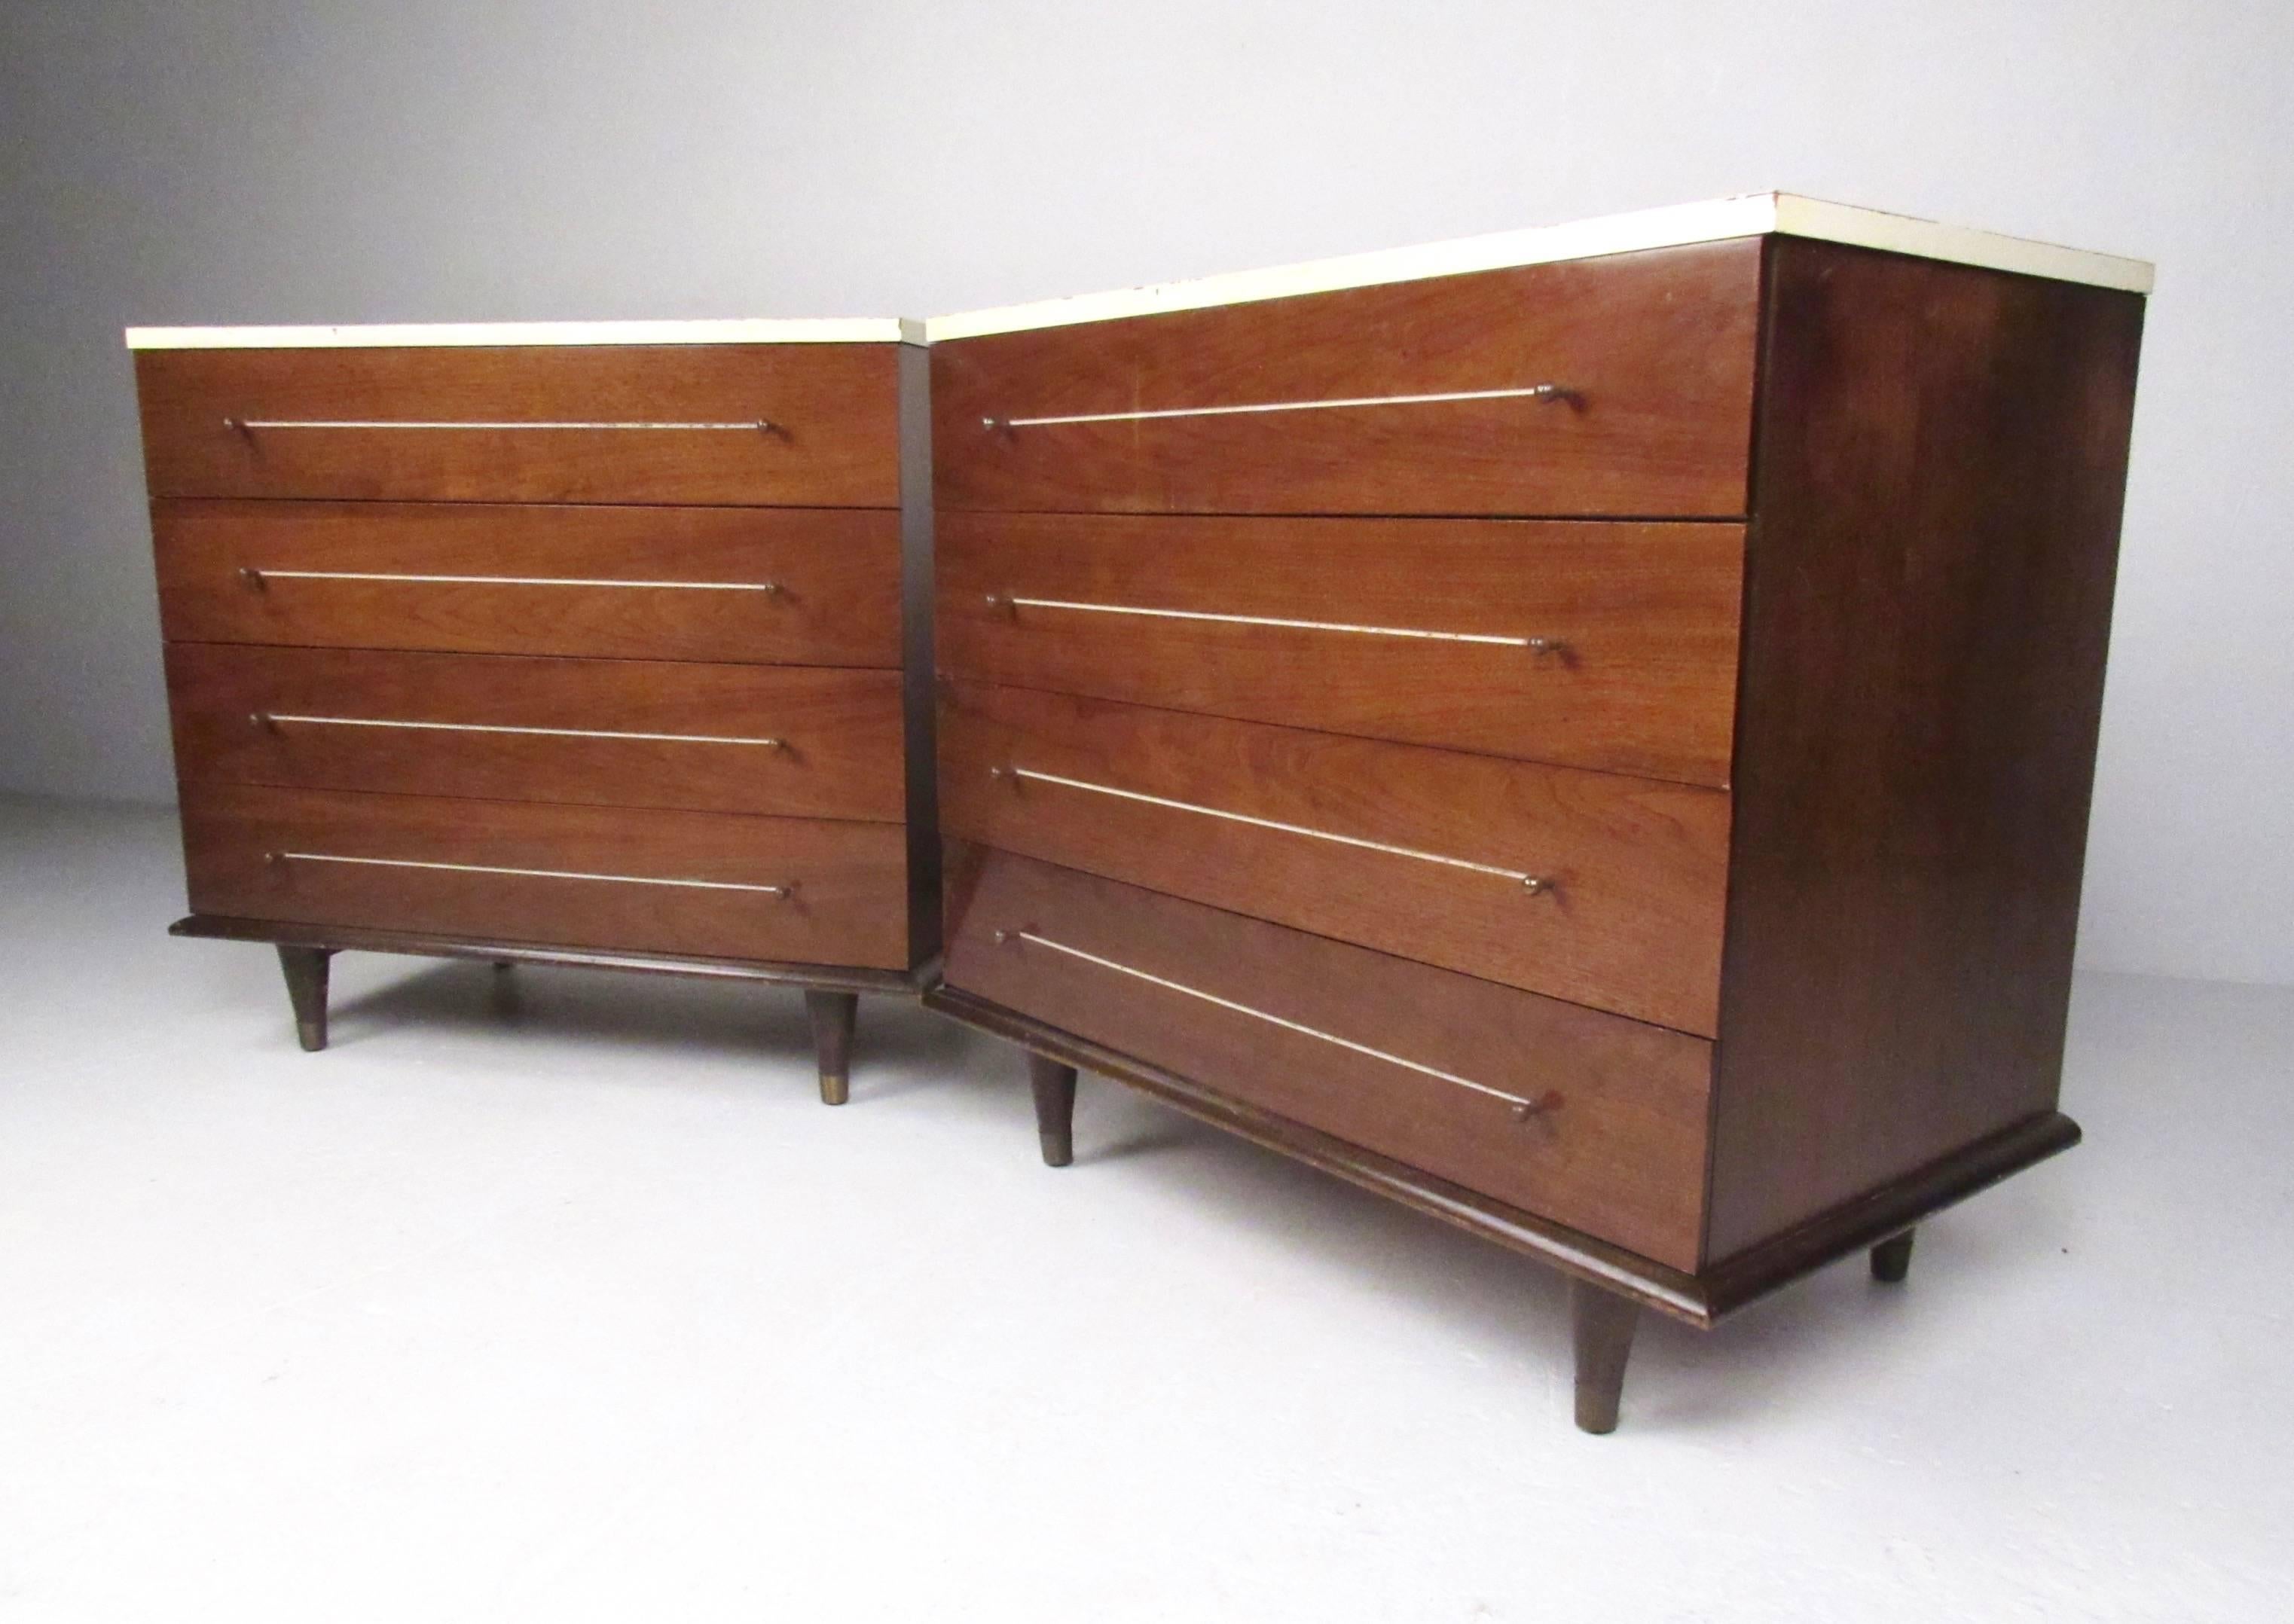 Dieses Paar moderner amerikanischer Kommoden verfügt über jeweils vier breite Schubladen für reichlich Stauraum im Schlafzimmer. Einzigartige weiße Abdeckplatten, runde Schubladengriffe und konisch zulaufende Messingbeine unterstreichen den